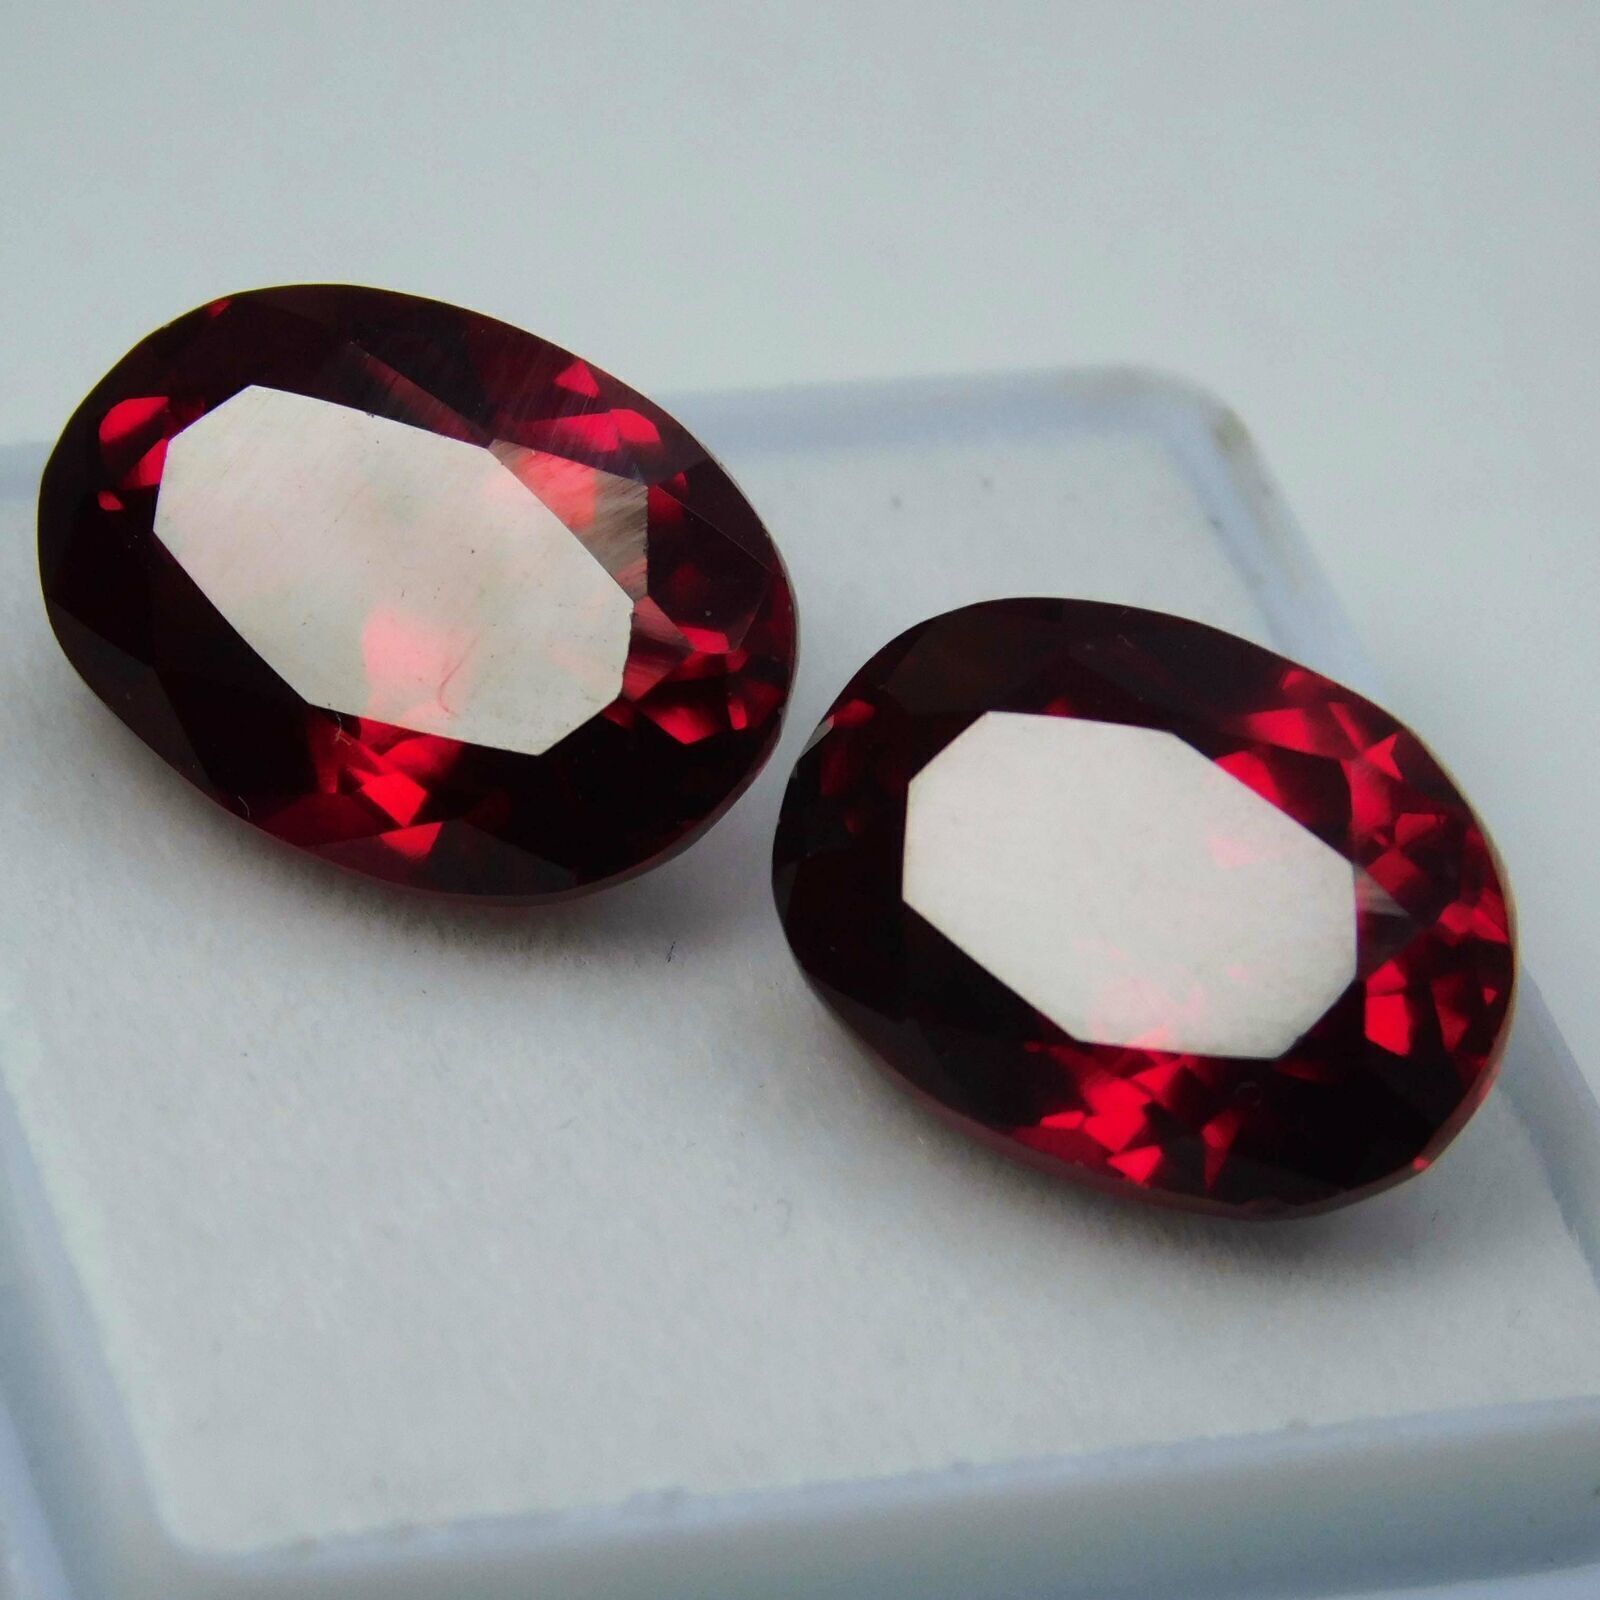 Par de piedras preciosas sueltas raras de talla ovalada de color rojo rubí...